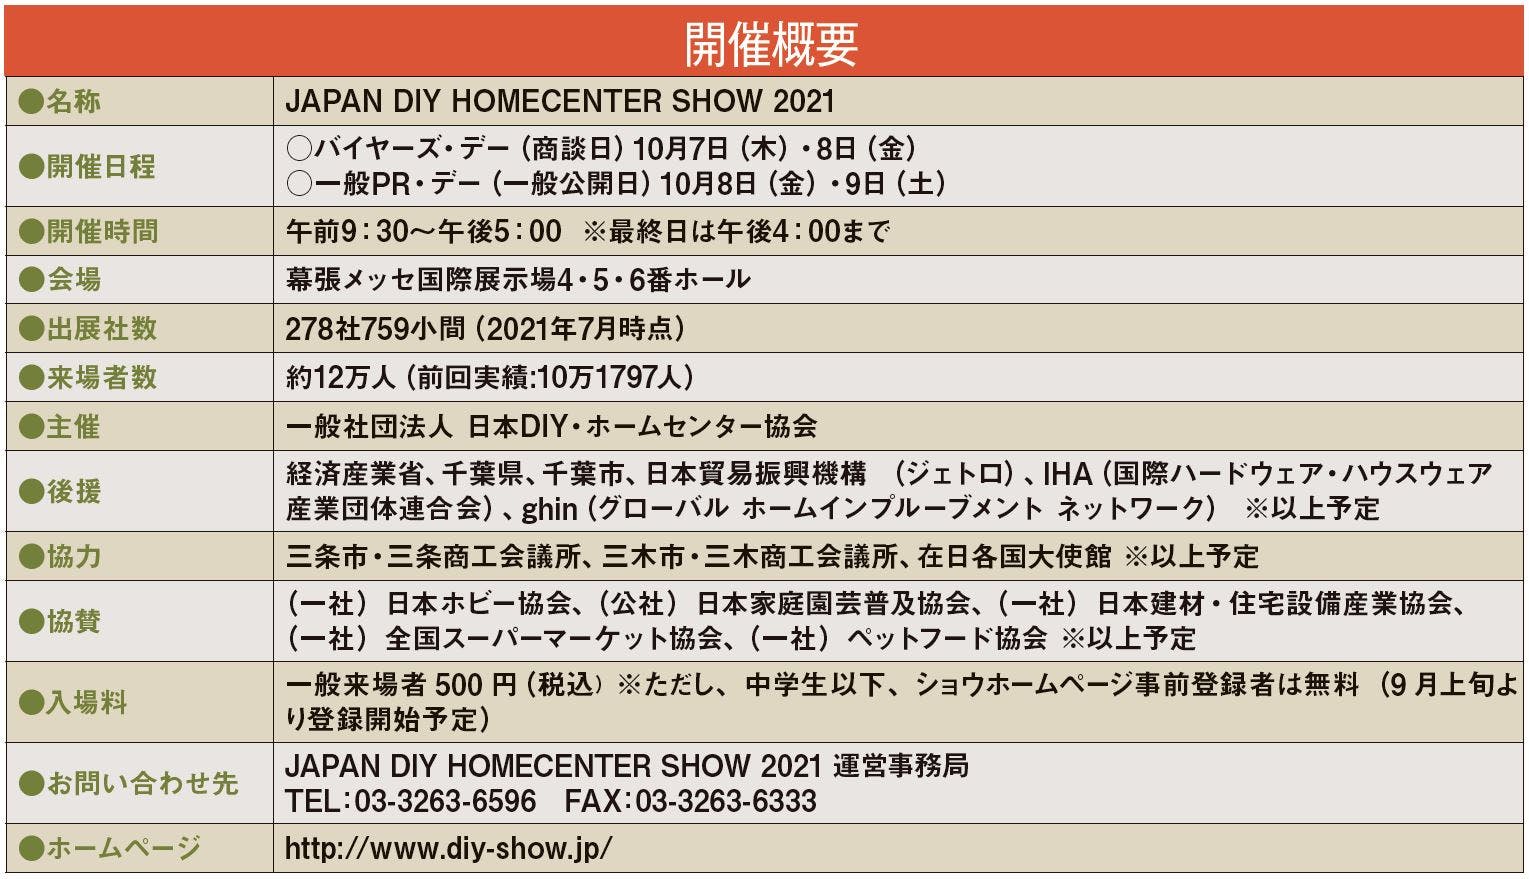 「JAPAN DIY HOMECENTER SHOW 2021」開催概要